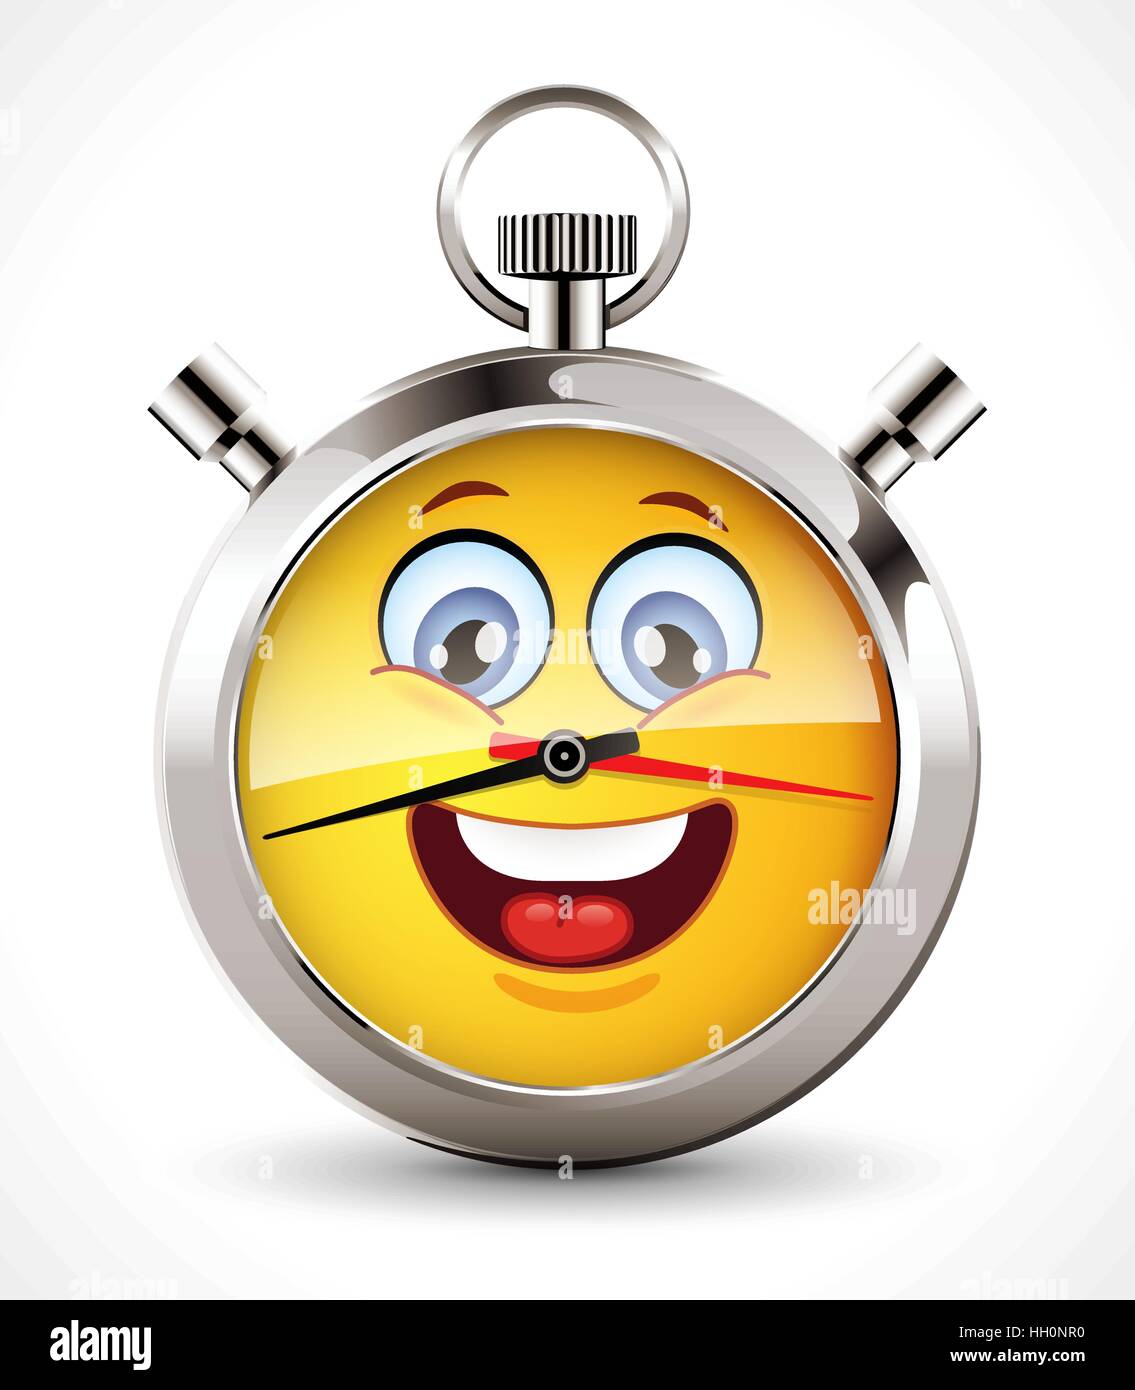 Smiley clock Banque d'images vectorielles - Alamy